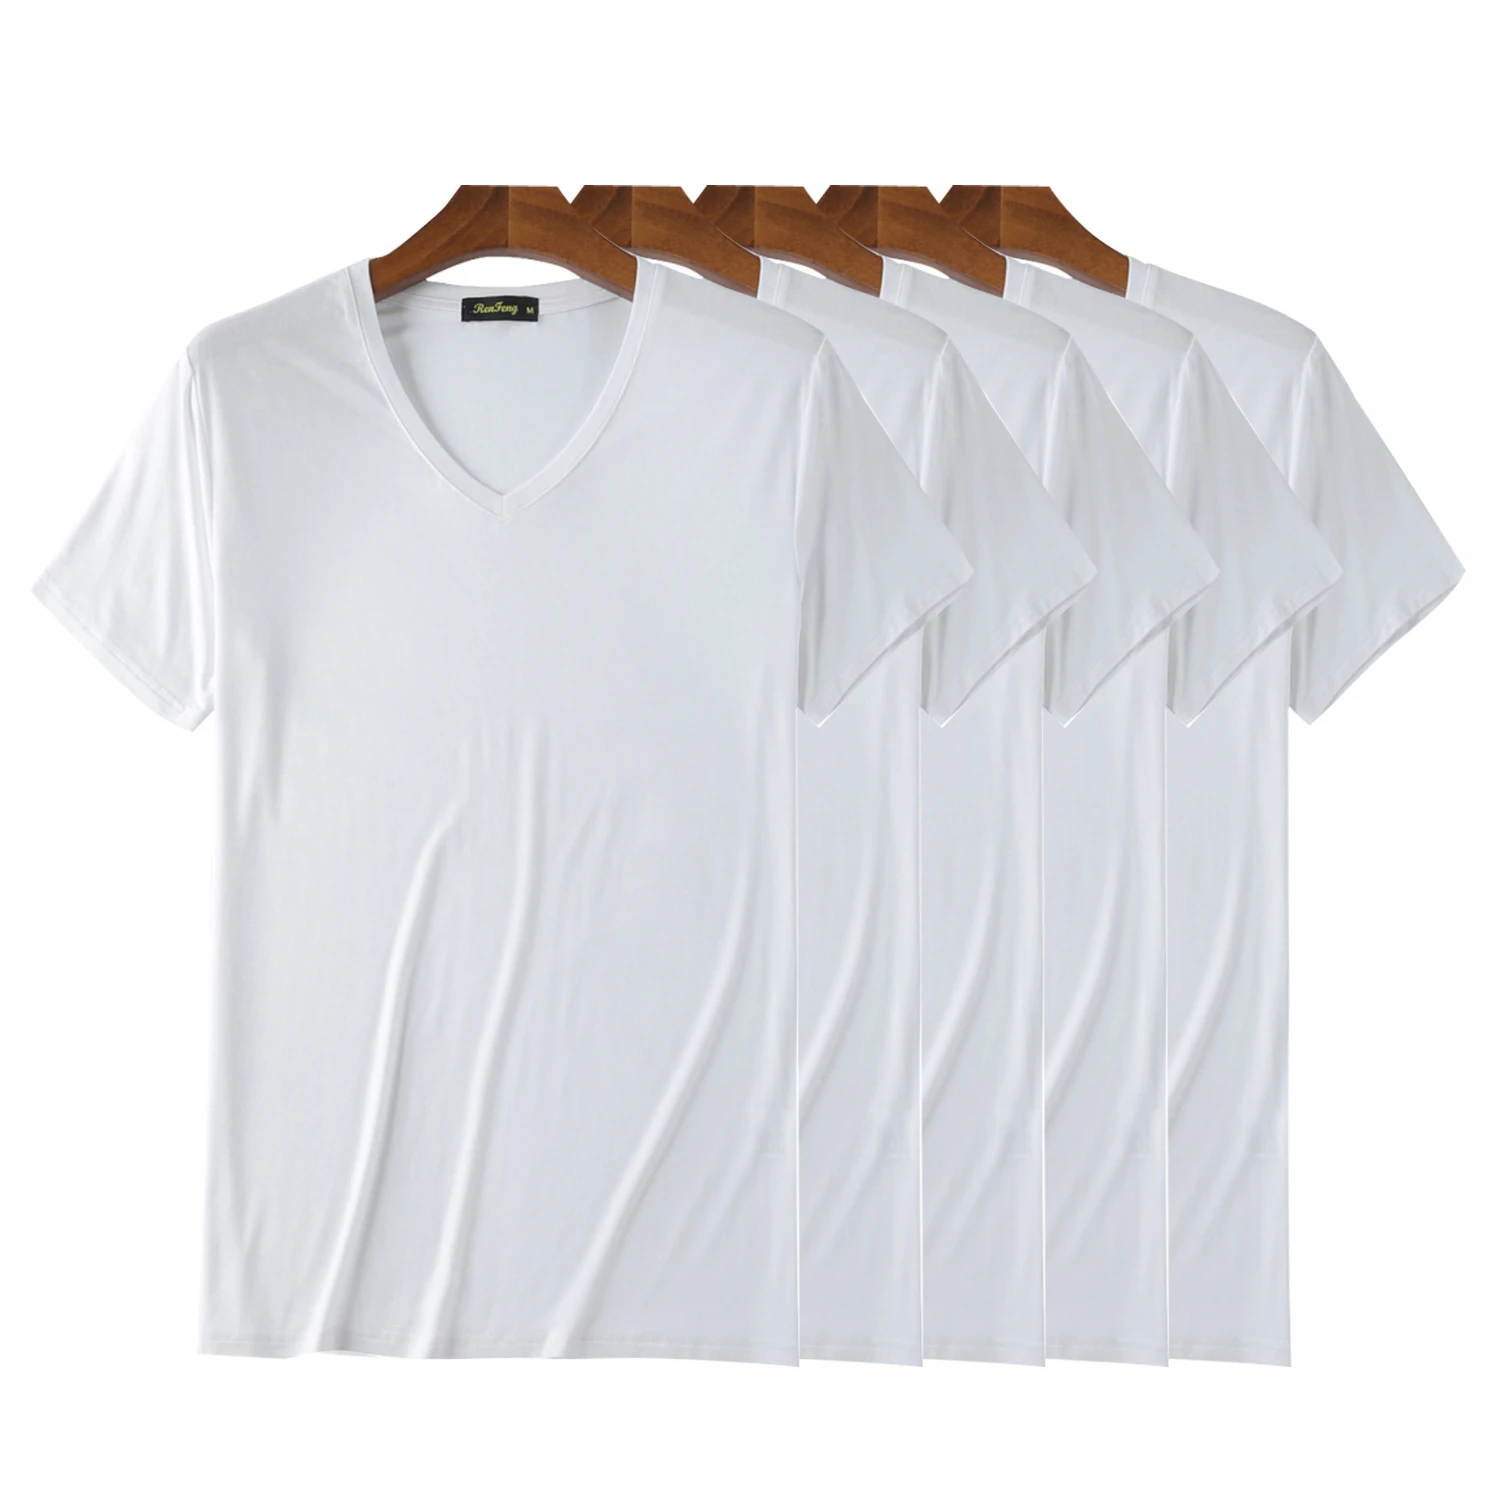 Мужская дышащая футболка с коротким рукавом и v образным вырезом 5 шт. в упаковке